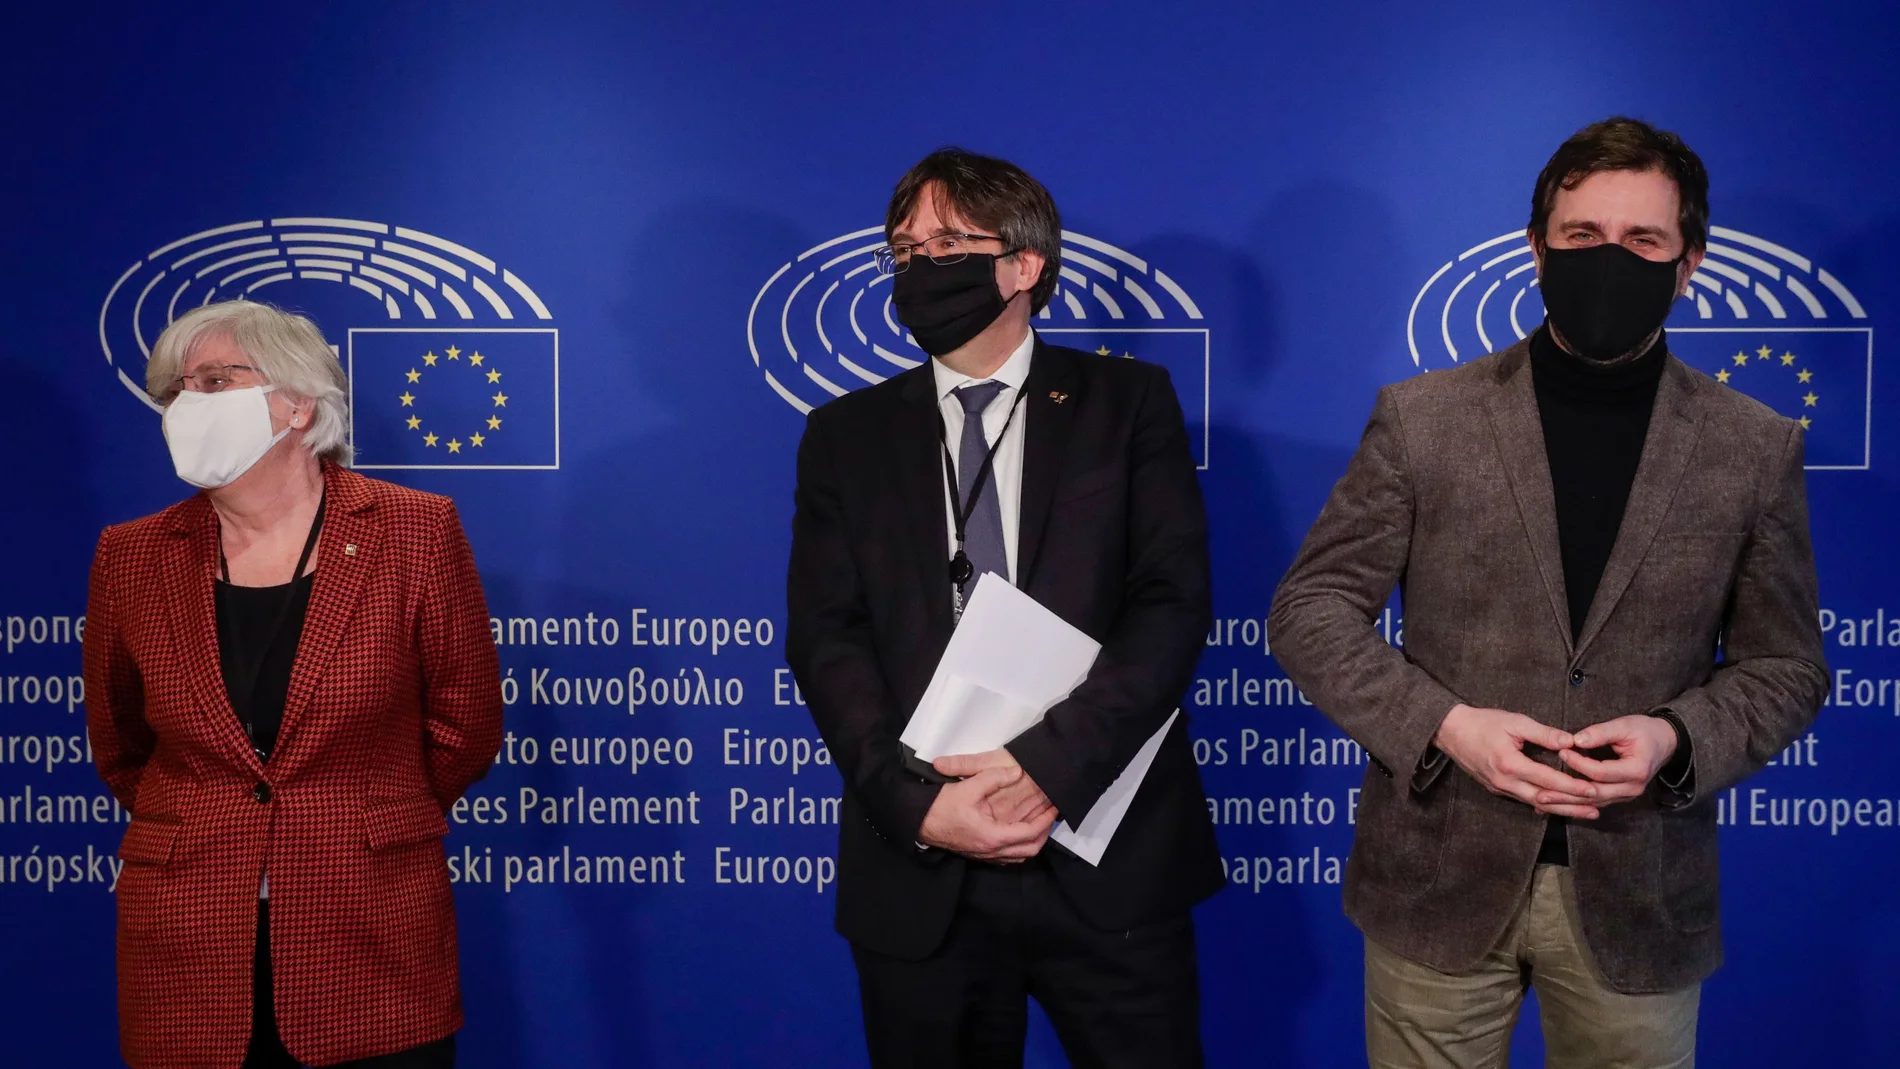 El ex presidente de Cataluña, Carles Puigdemont, ha solicitado hoy en el Parlamento Europeo el rechazo de su suplicatorio